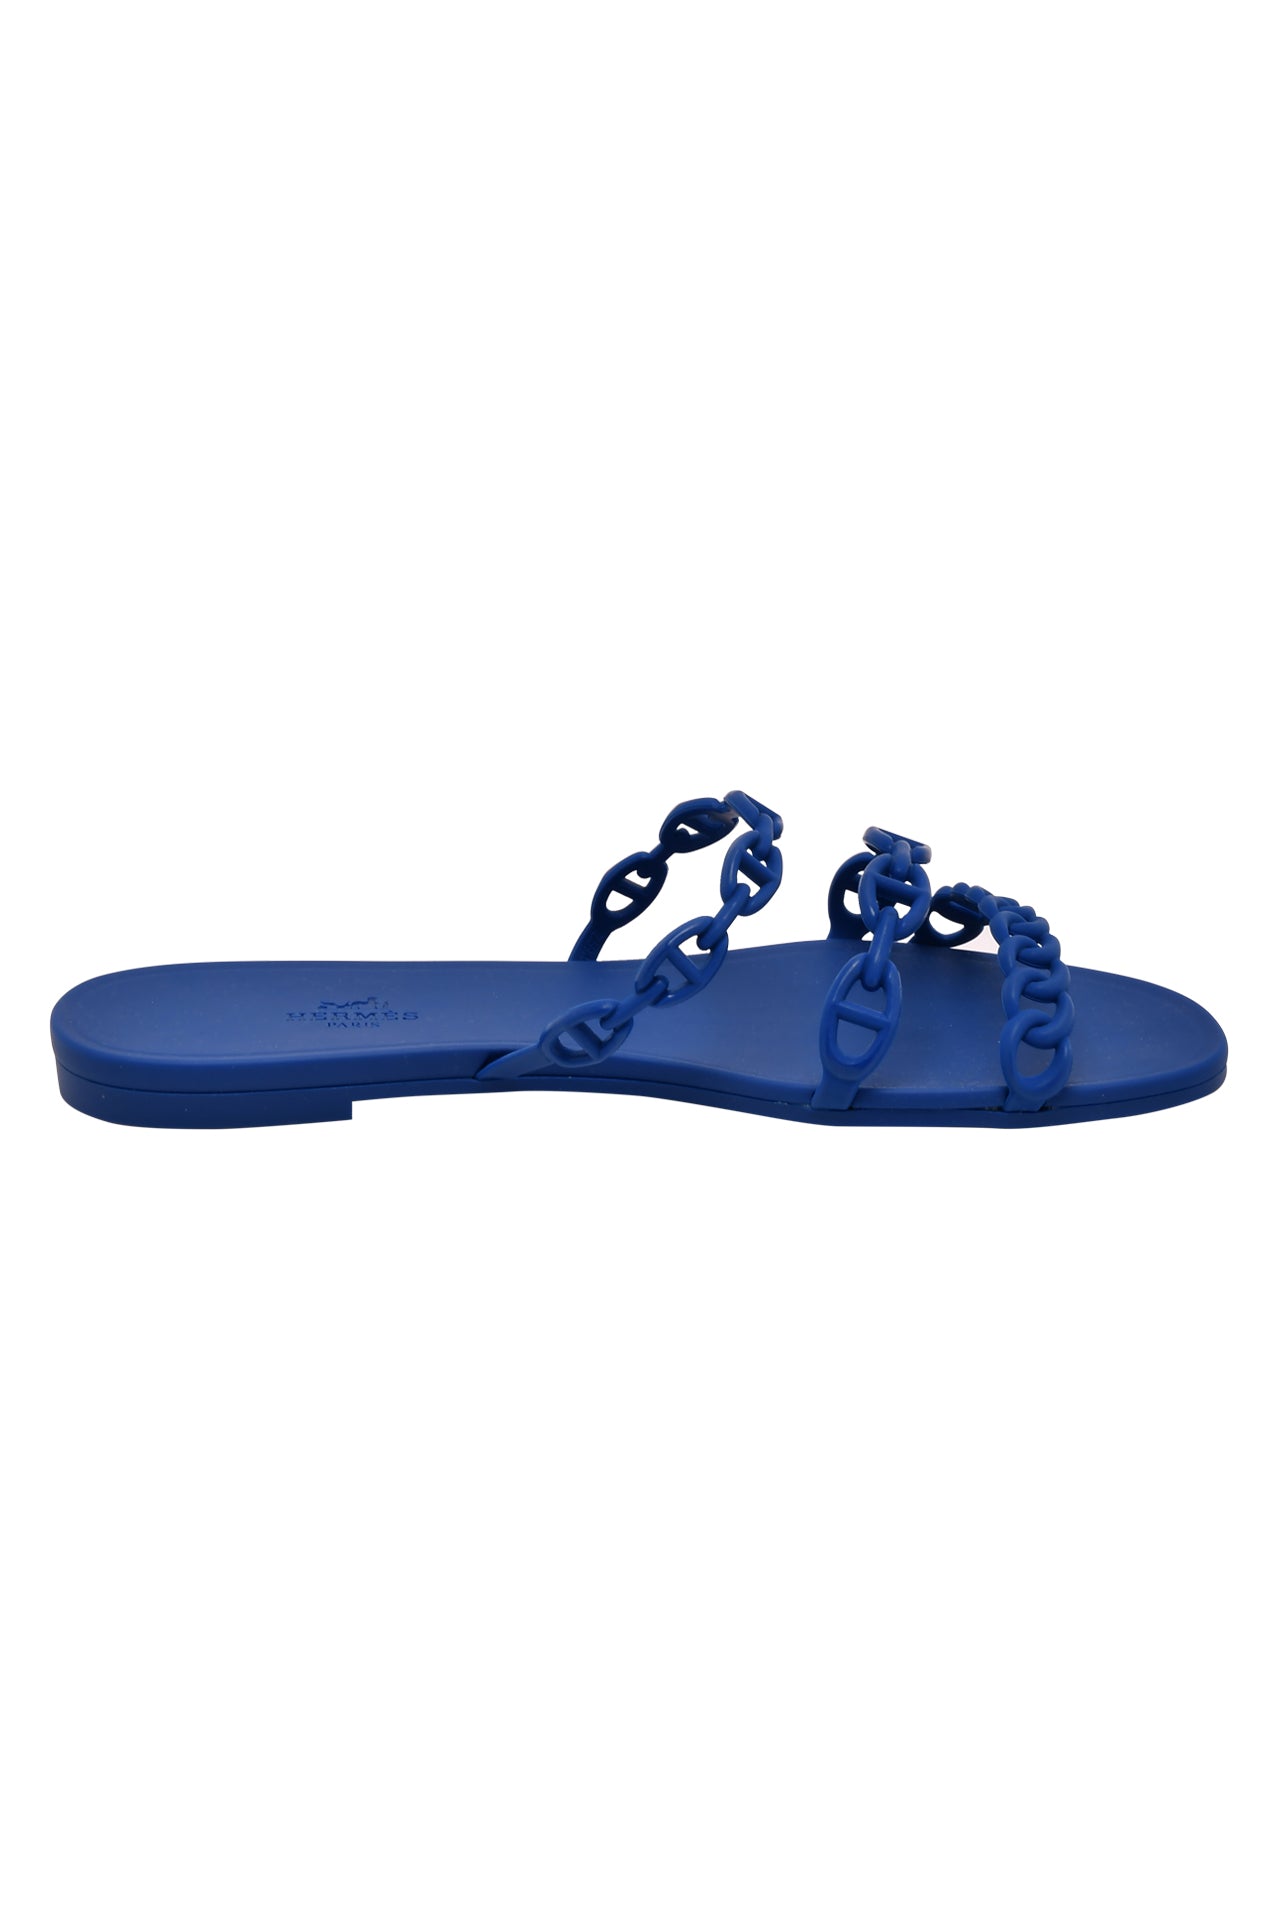 Hermes Blue Rubber D'ancre Chaine Rivage Sandals EU 40